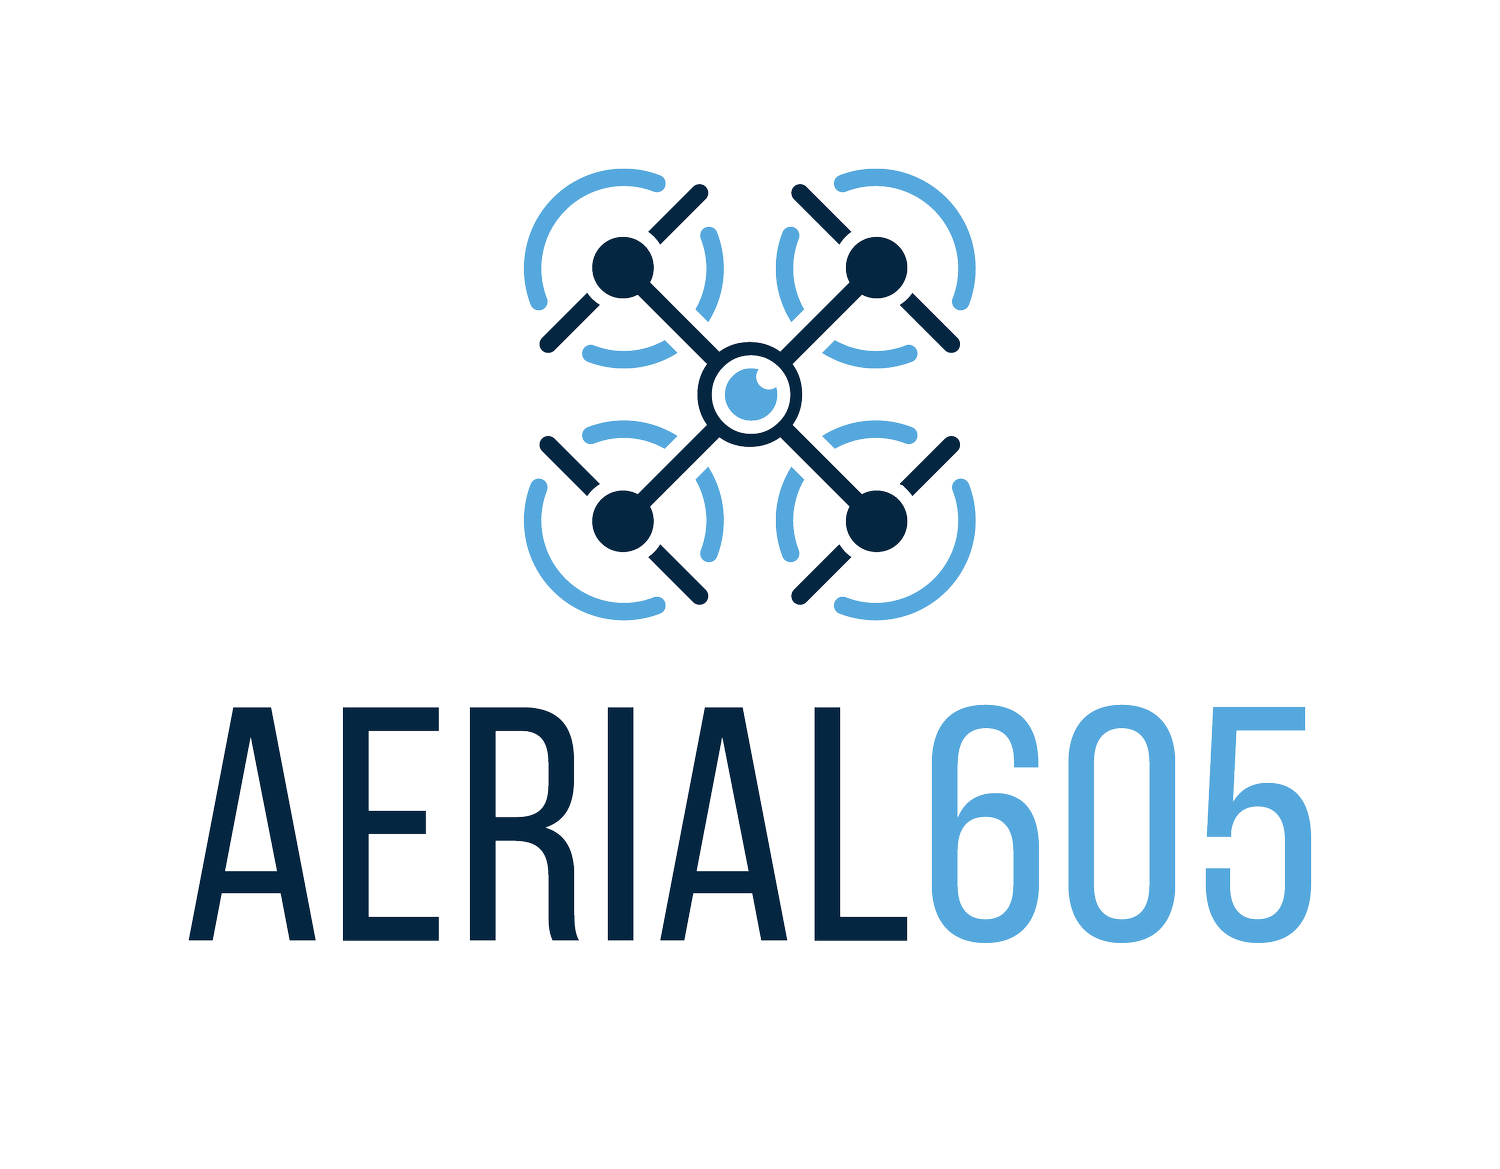 AERIAL605